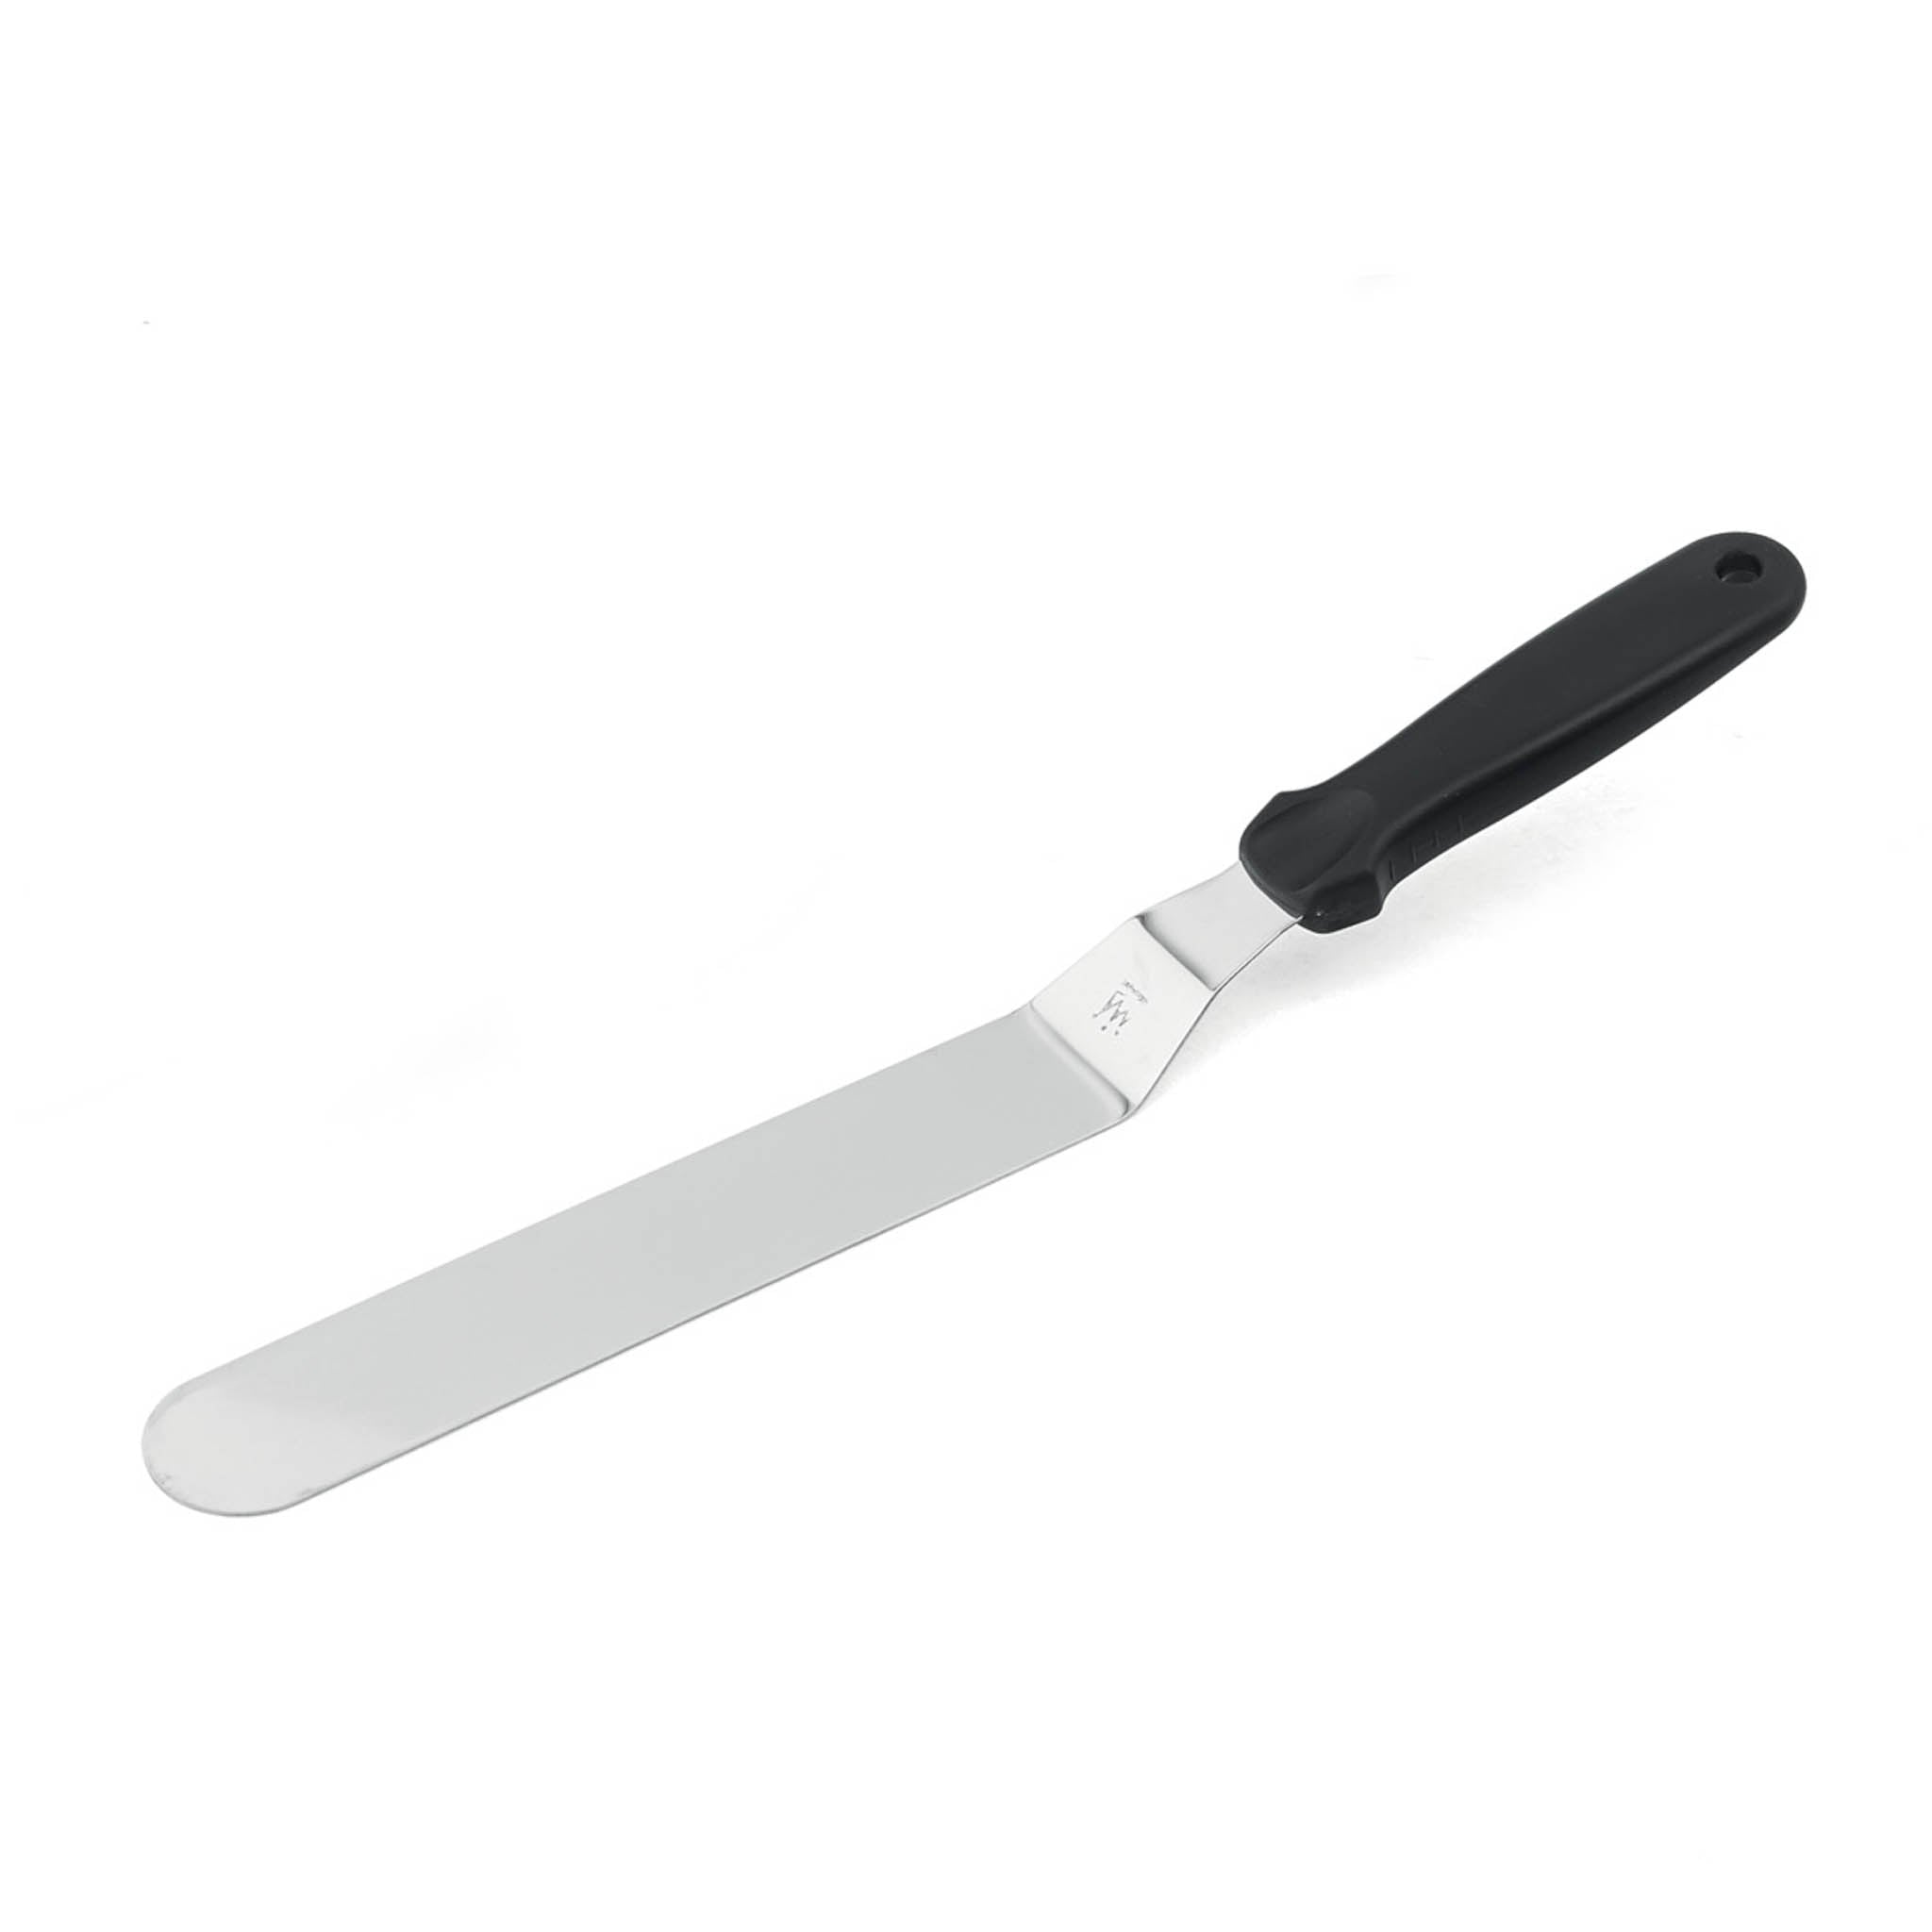 Silikomart Offset Palette Knife 16cm